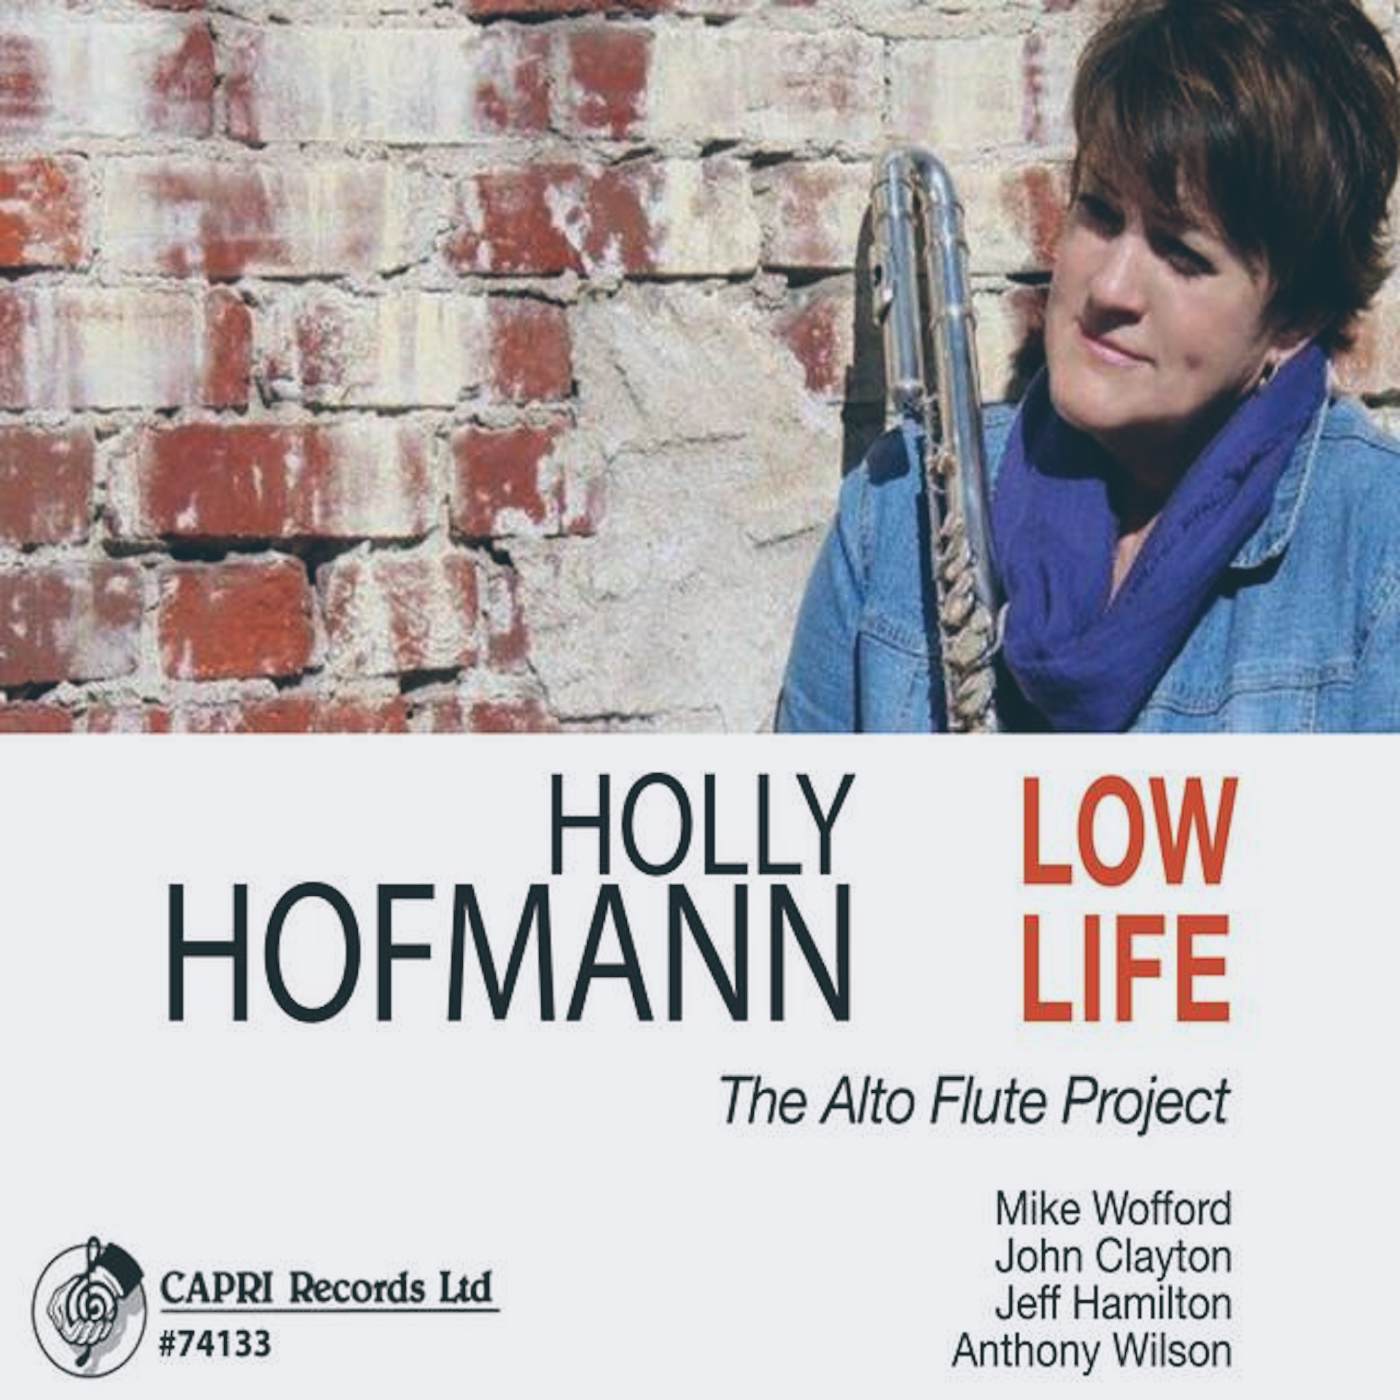 Holly Hofmann